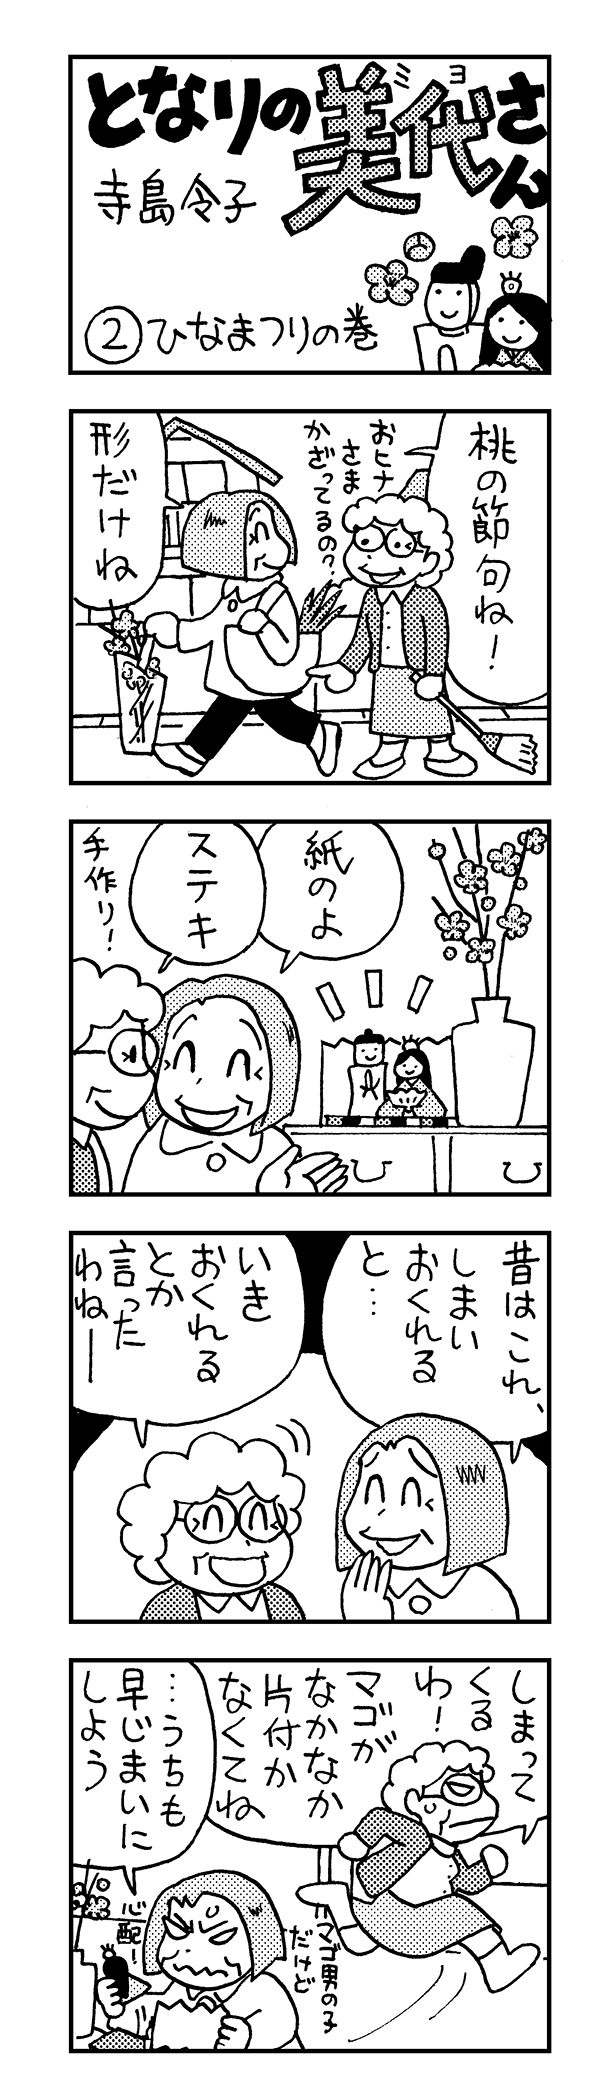 日本薬師堂会報誌春号掲載4コマ漫画「となりの美代さん」 第2弾の画像1枚目